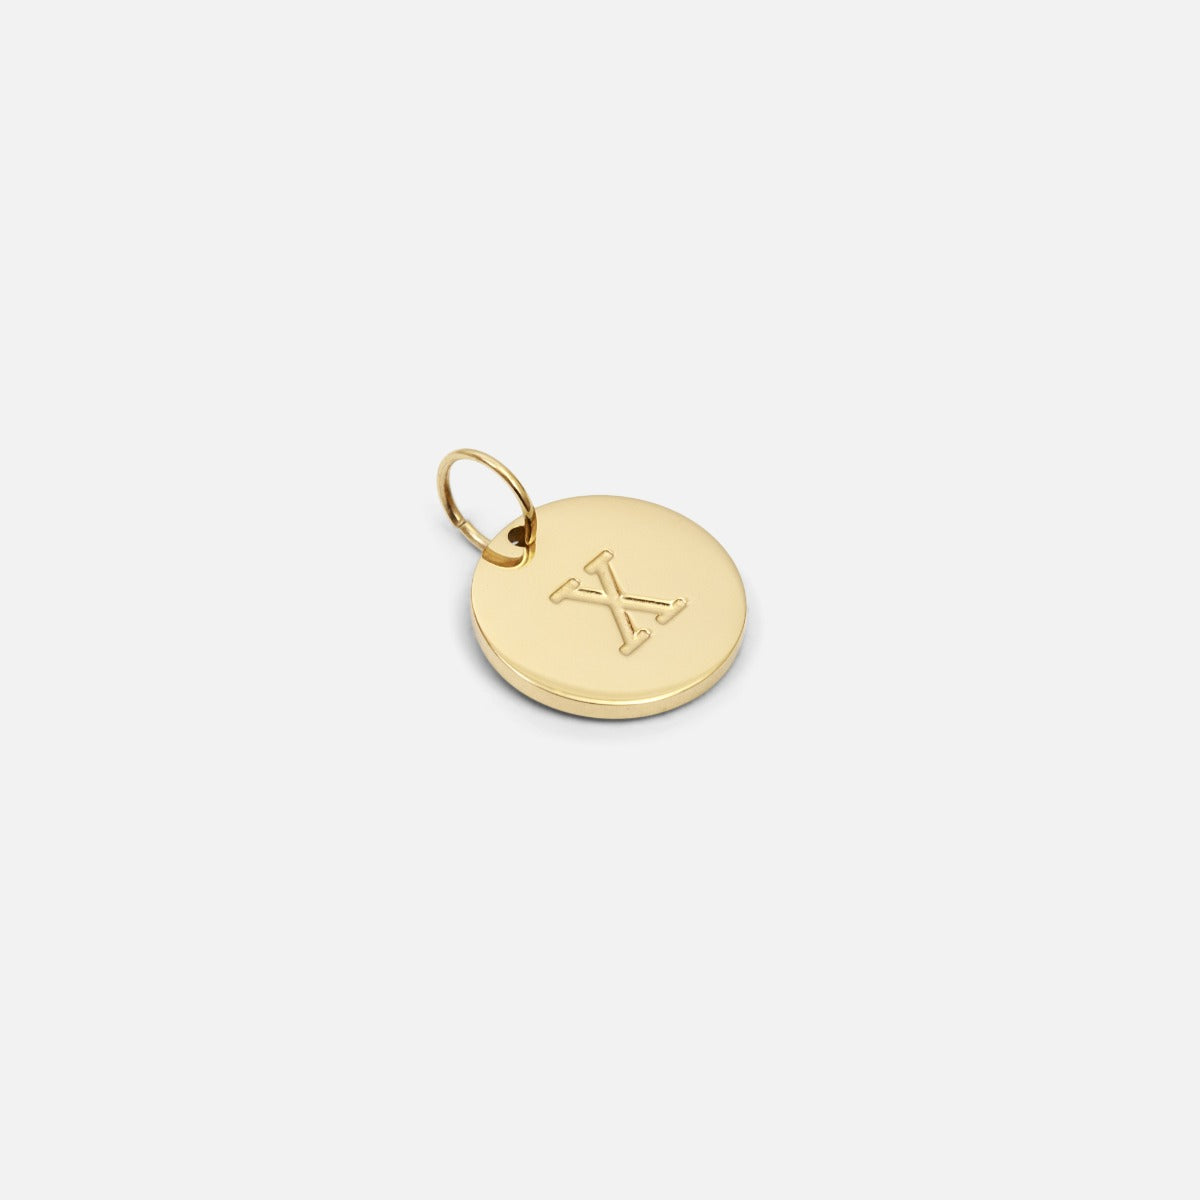 Petite breloque dorée symbolique gravée lettre de l’alphabet "x"